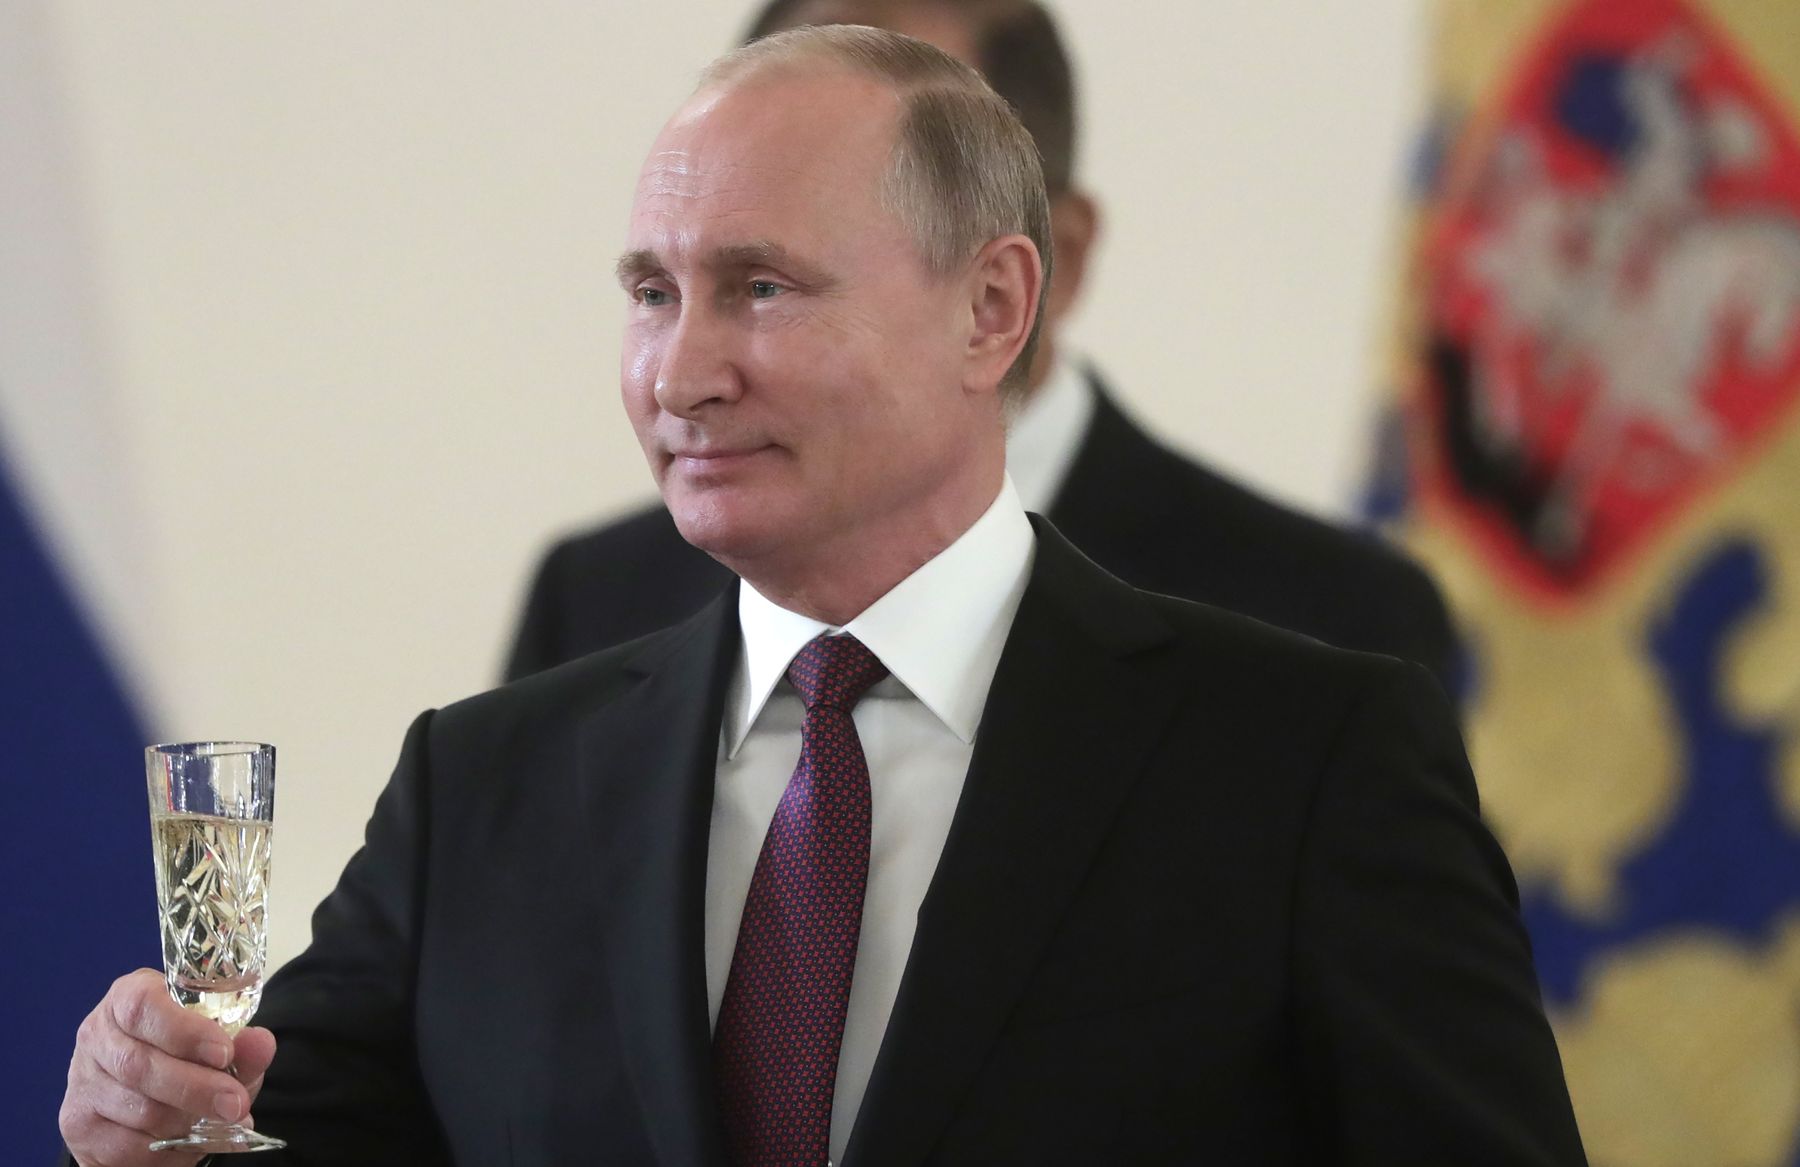 Песков сообщил, с чем поздравит Зеленского Путин